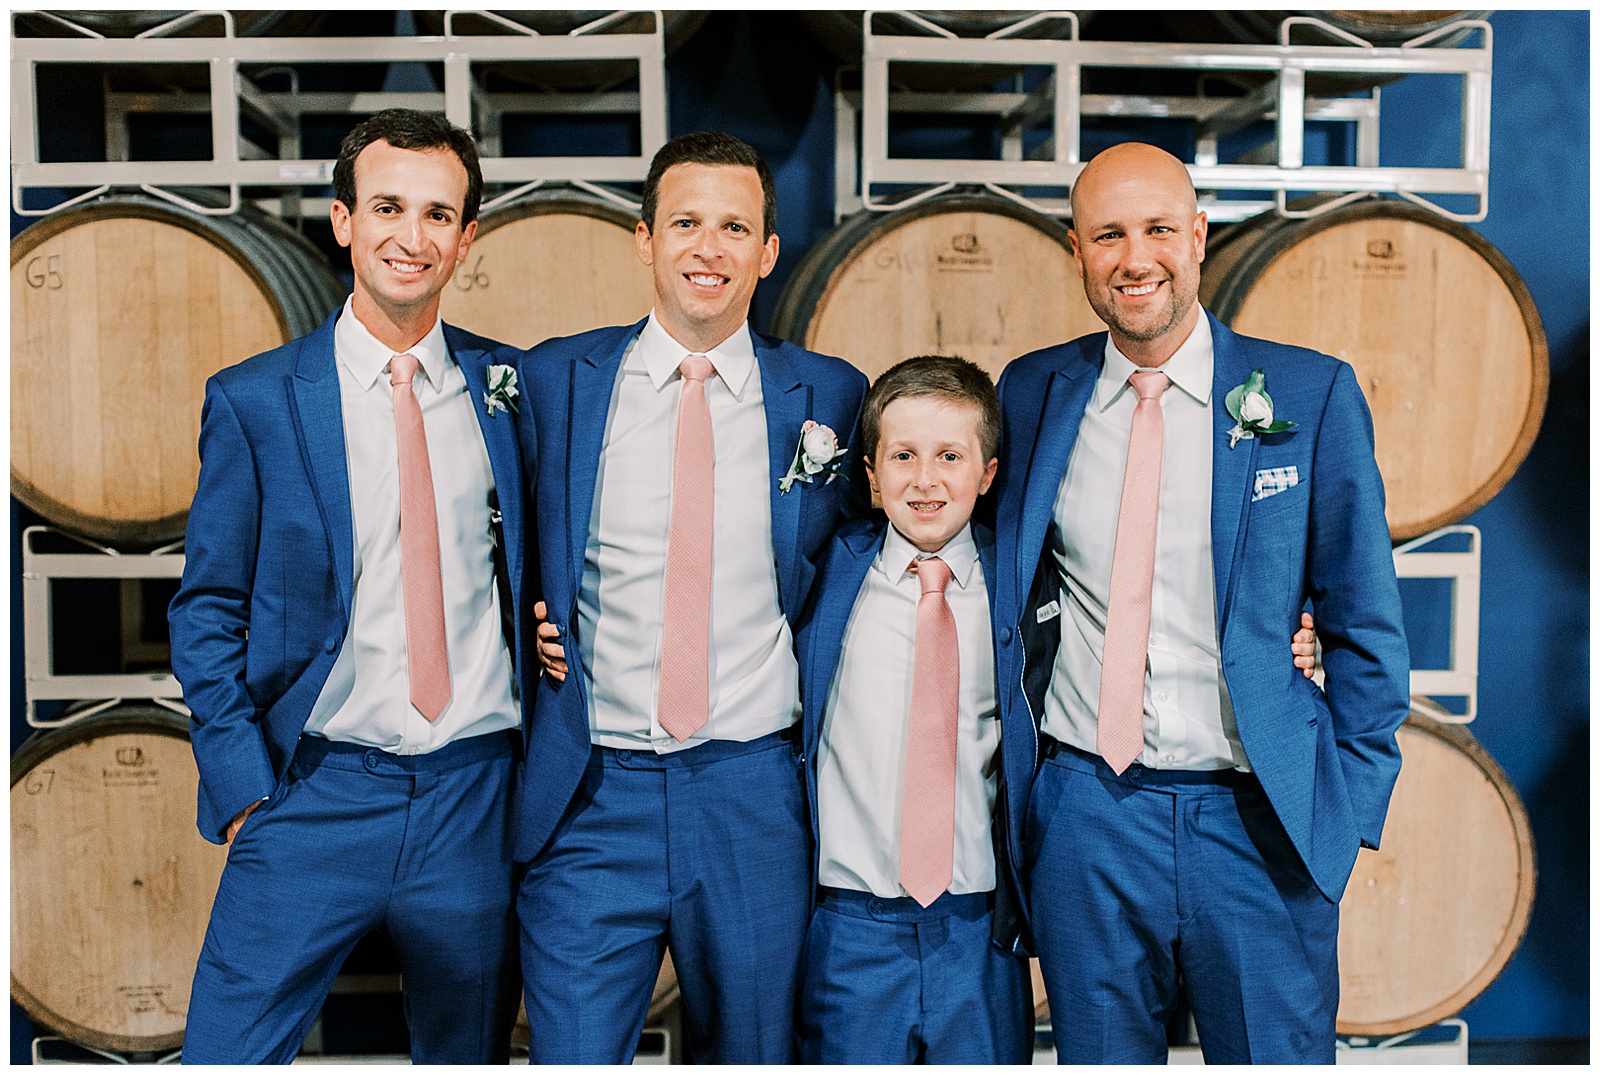 indoor summer wedding groomsmen portrait in navy blue suits and pink tie